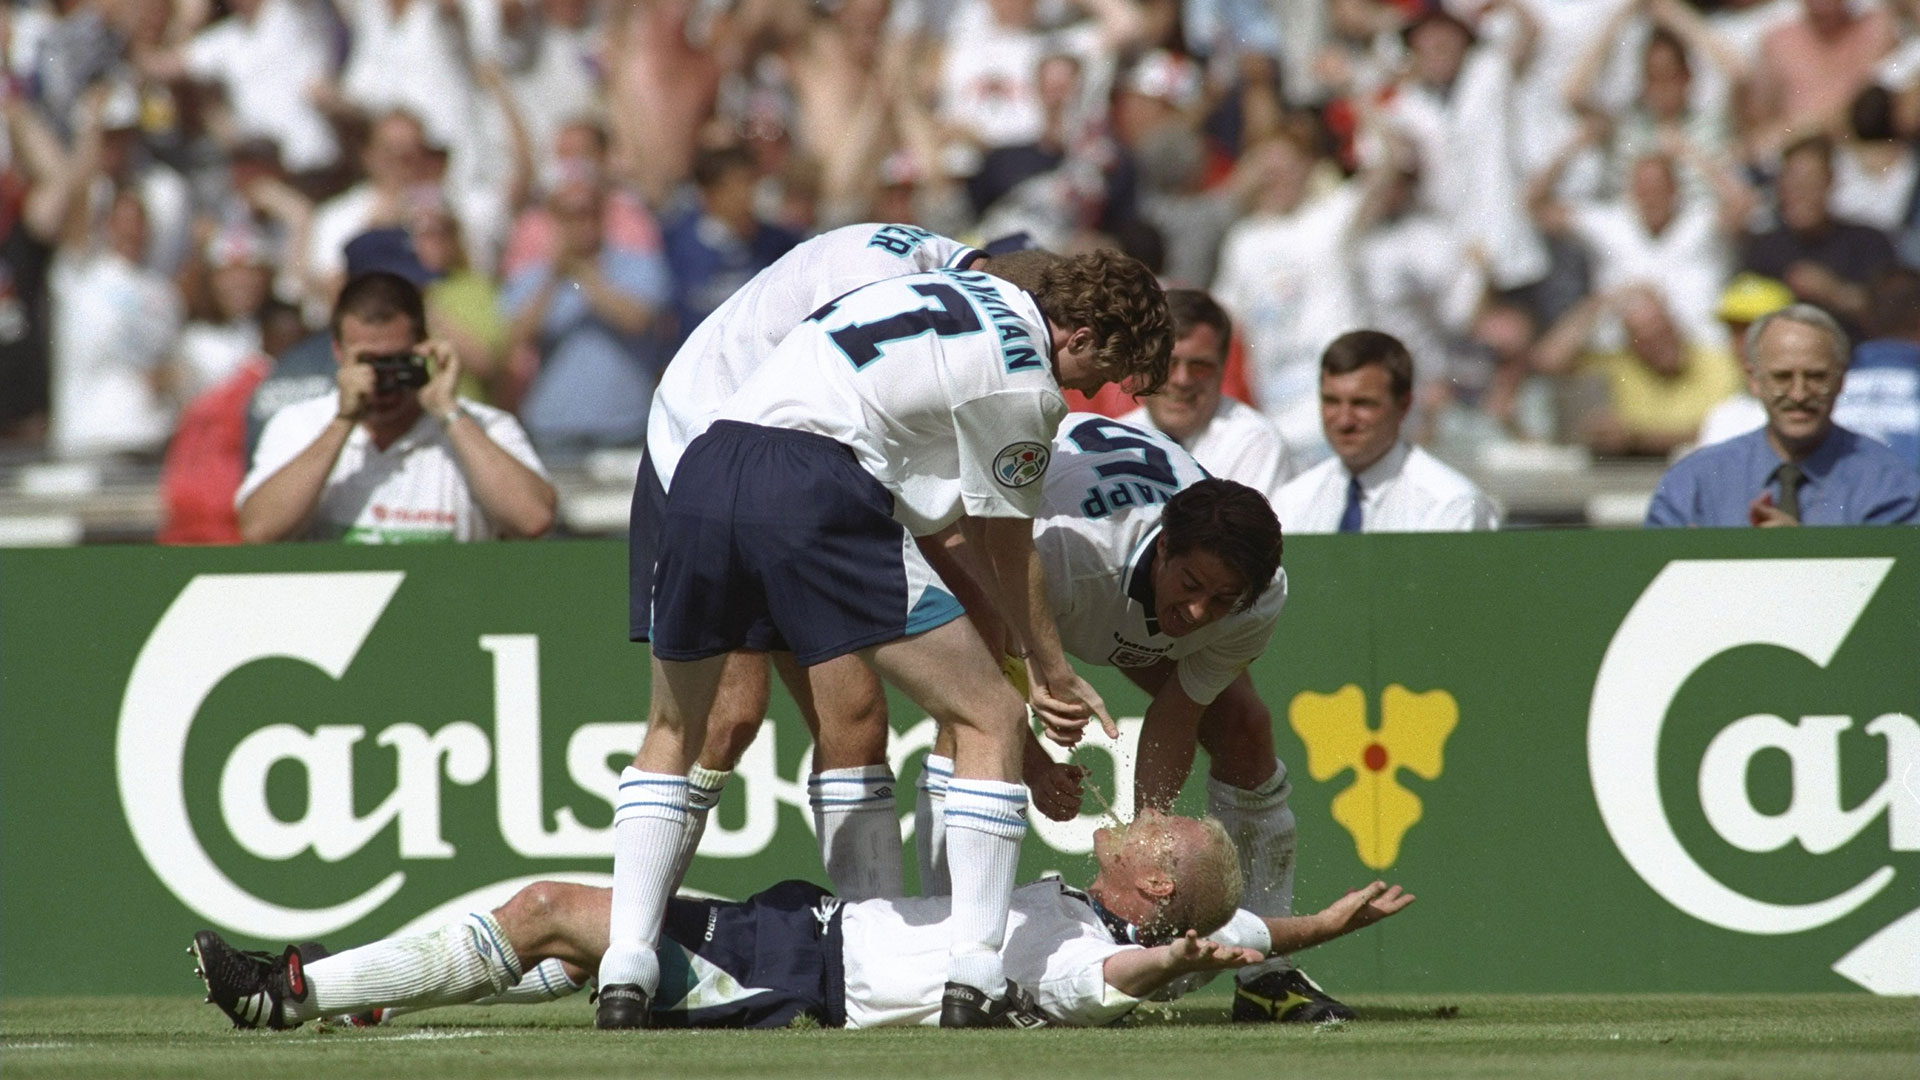 Explained: Gascoigne's iconic Euro 96 celebration in England vs Scotland classic